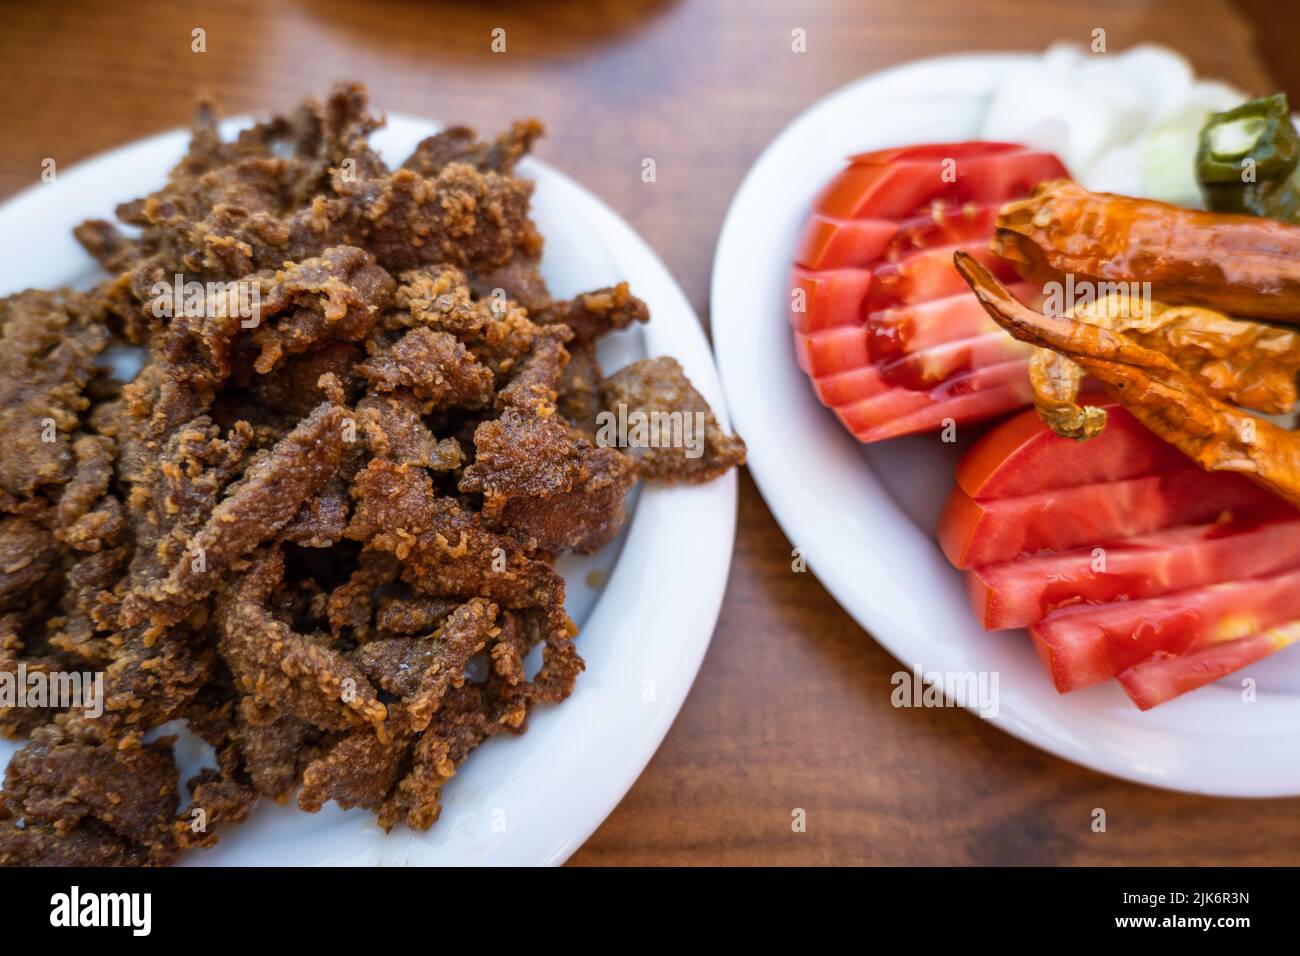 Plat Eirne Ciger (Tava Ciger en turc), spécialités alimentaires à Edirne, Turquie. Foie cuit dans l'huile. Cuisine turque. Banque D'Images